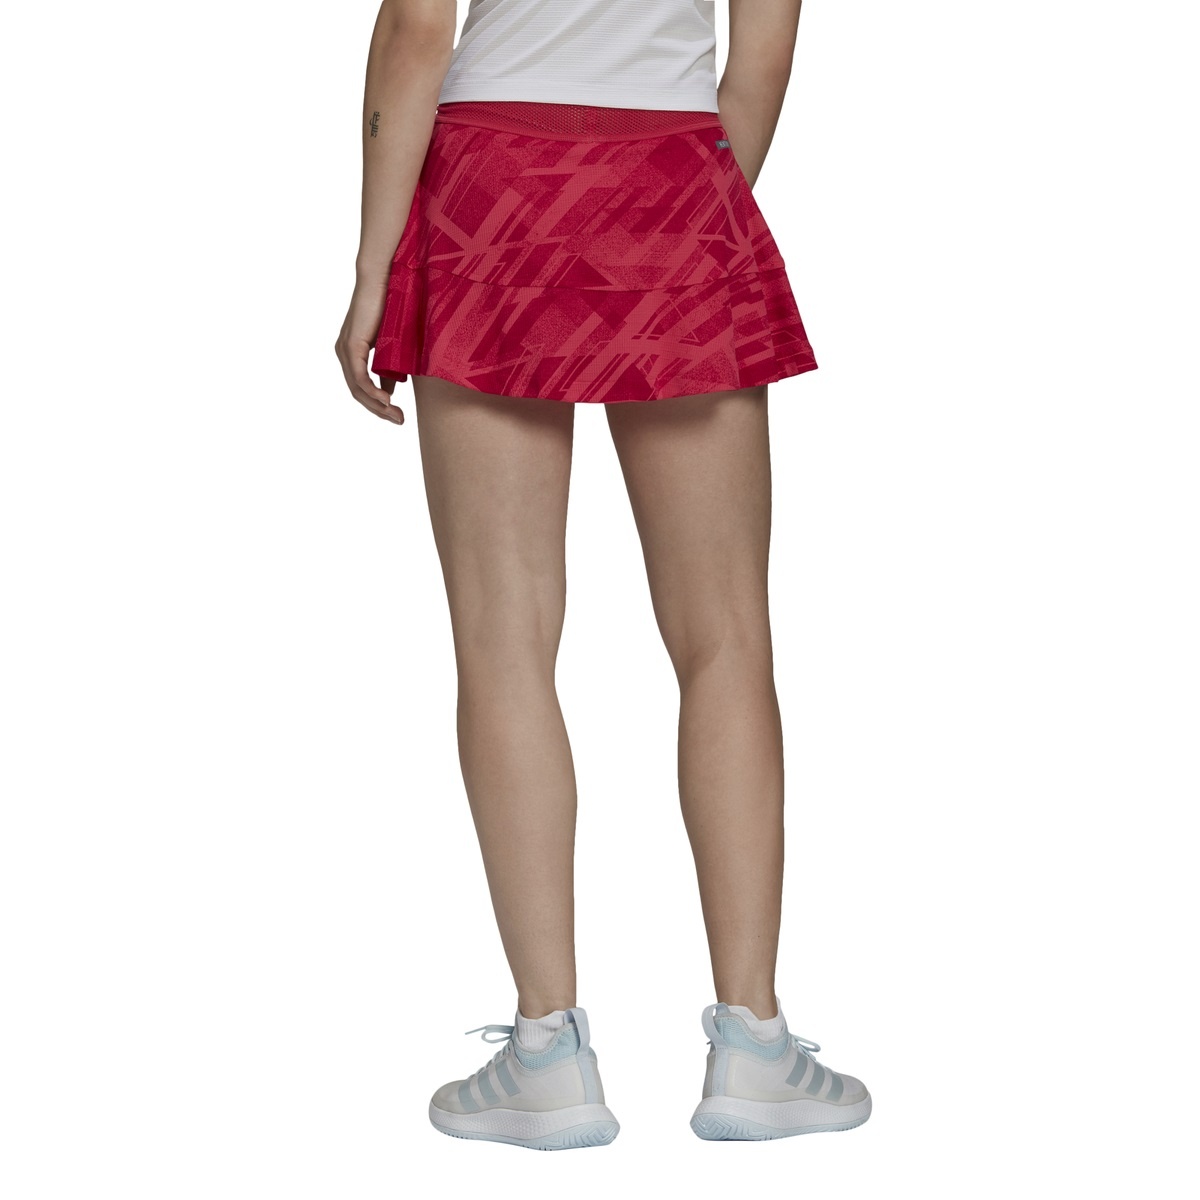 Astis Damen Tennis-Rock Celta rot NEU Teambekleidung Tennis Equipment 